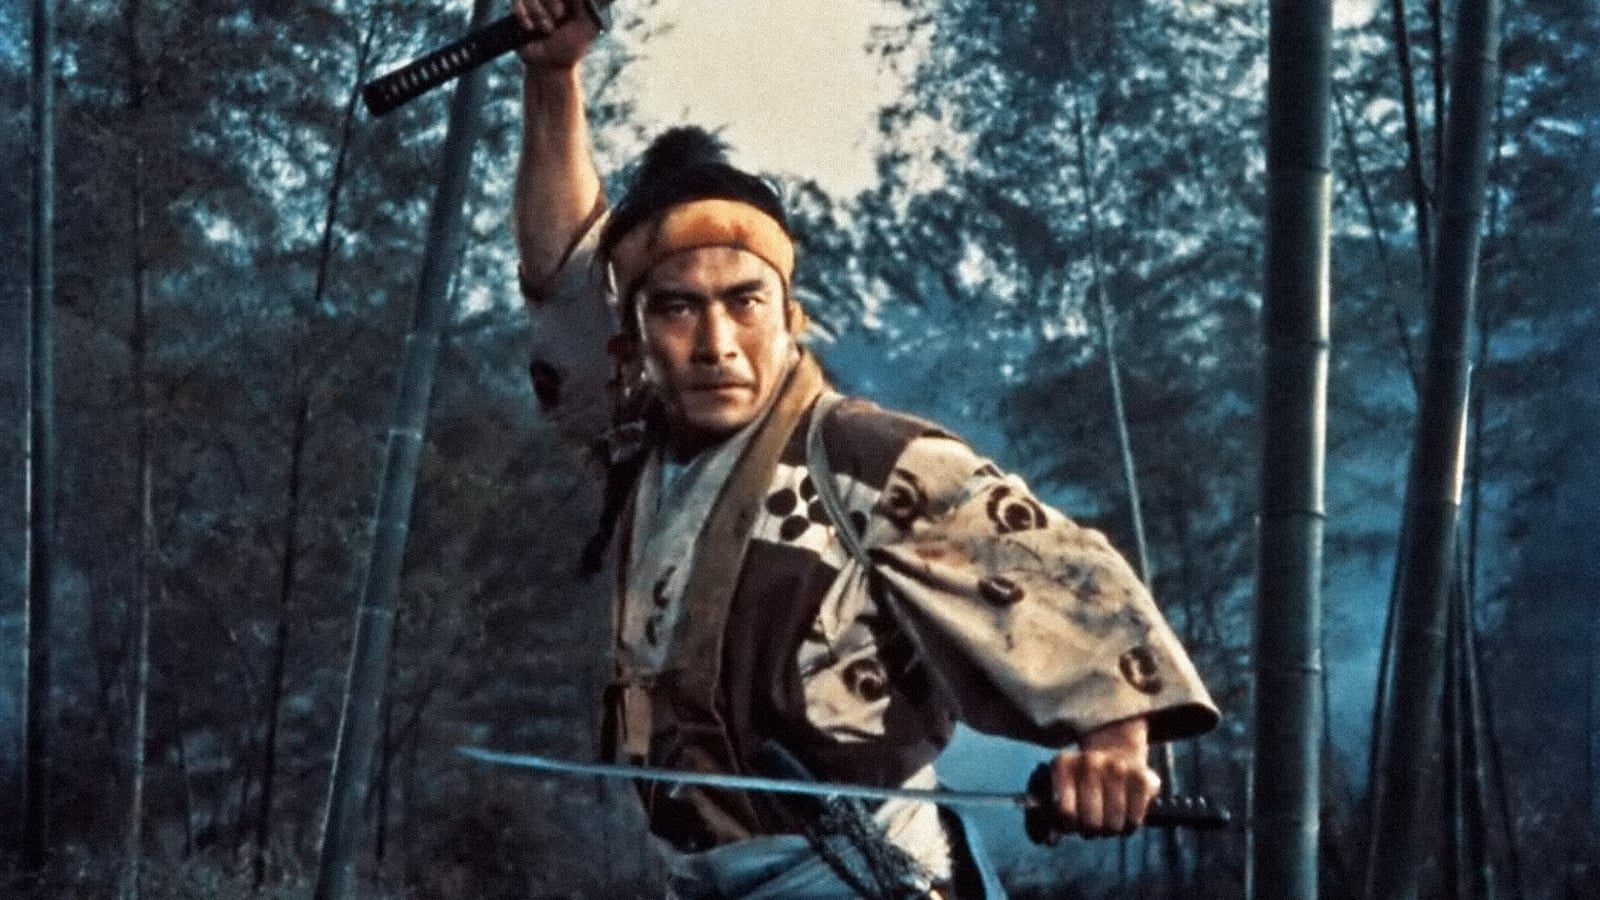 Image du film La légende de Musashi bzd7ond1xlzxjlgs5ygtshty67njpg